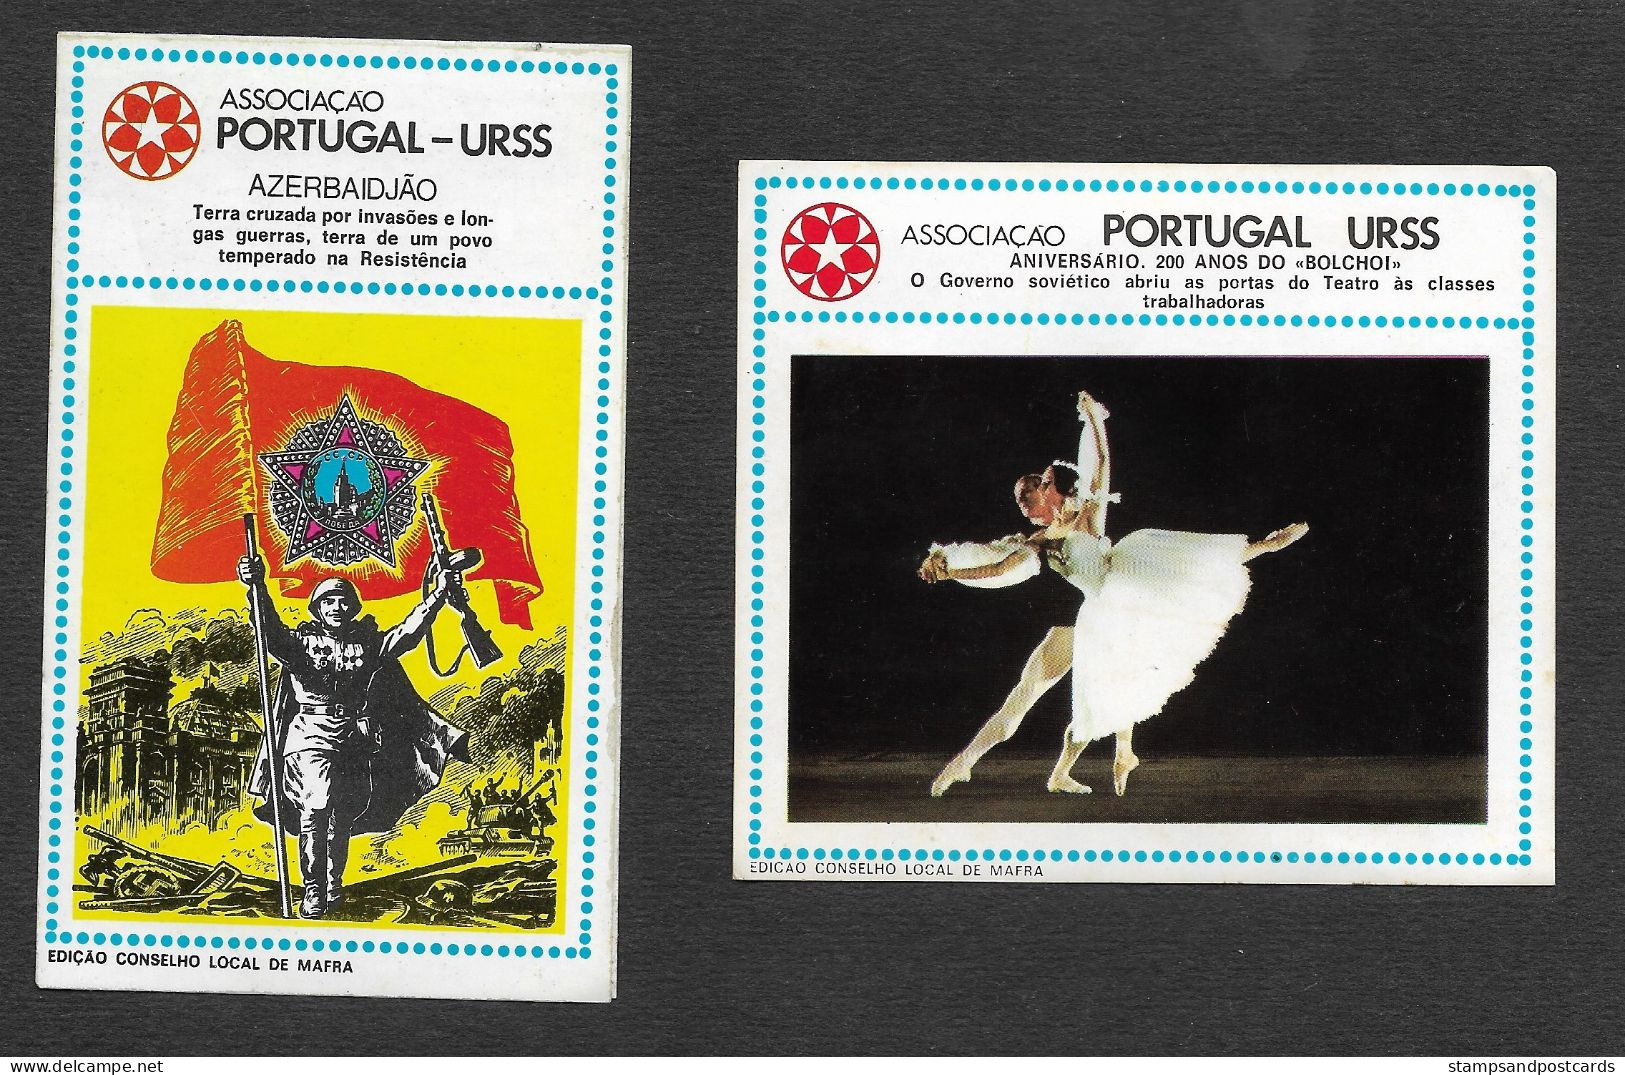 Portugal URSS USSR Association Amitié Union Soviètique Russie Communiste 8 Autocollant Communist Political Sticker 1976 - Aufkleber